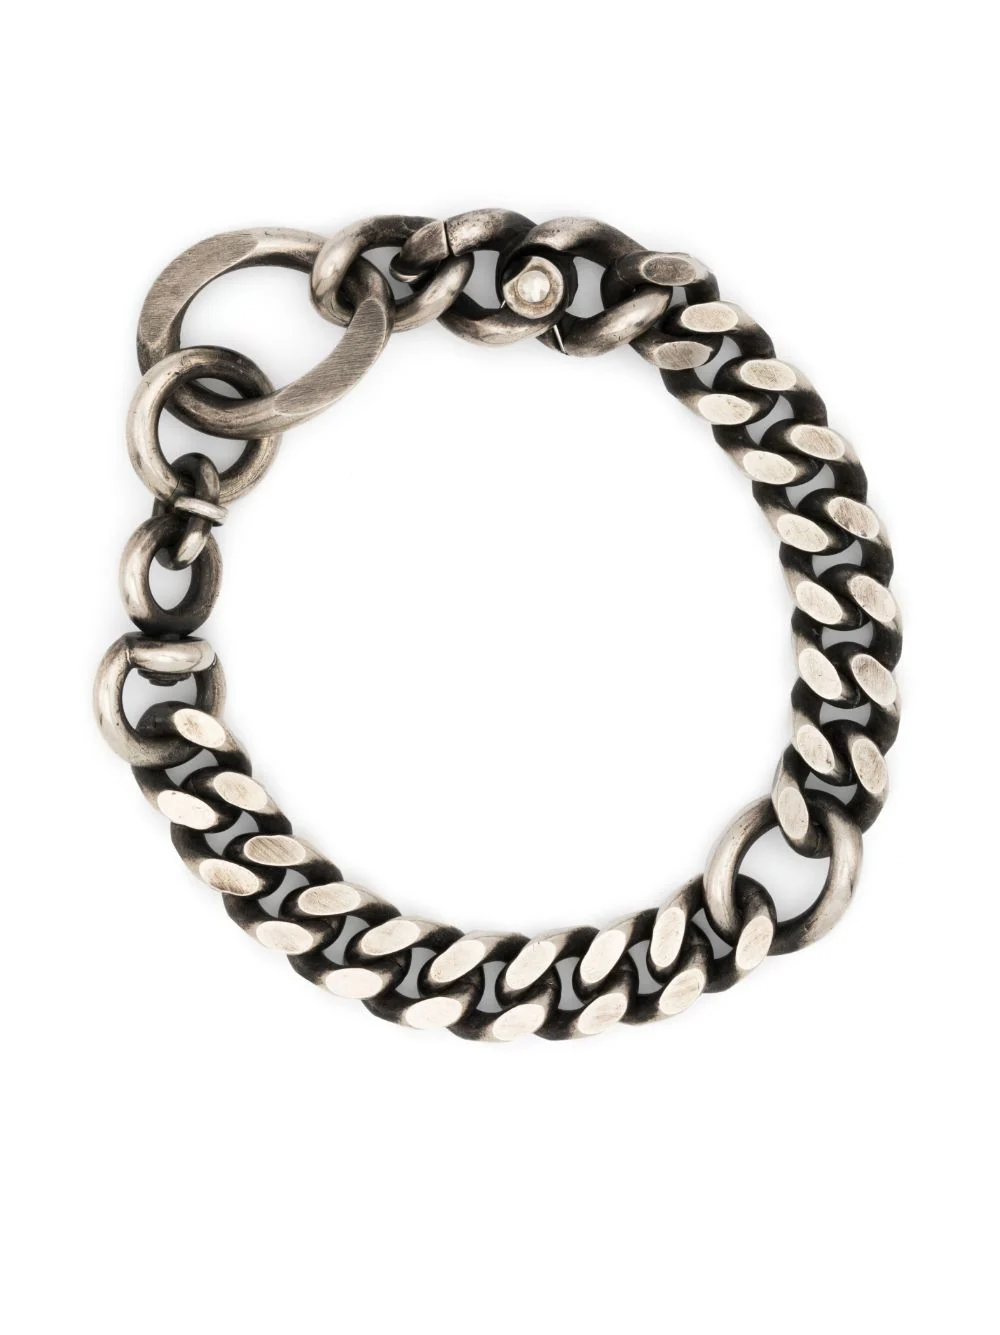 WERKSTATT MUNCHEN Revolving Link Bracelet M2312 – Atelier New York